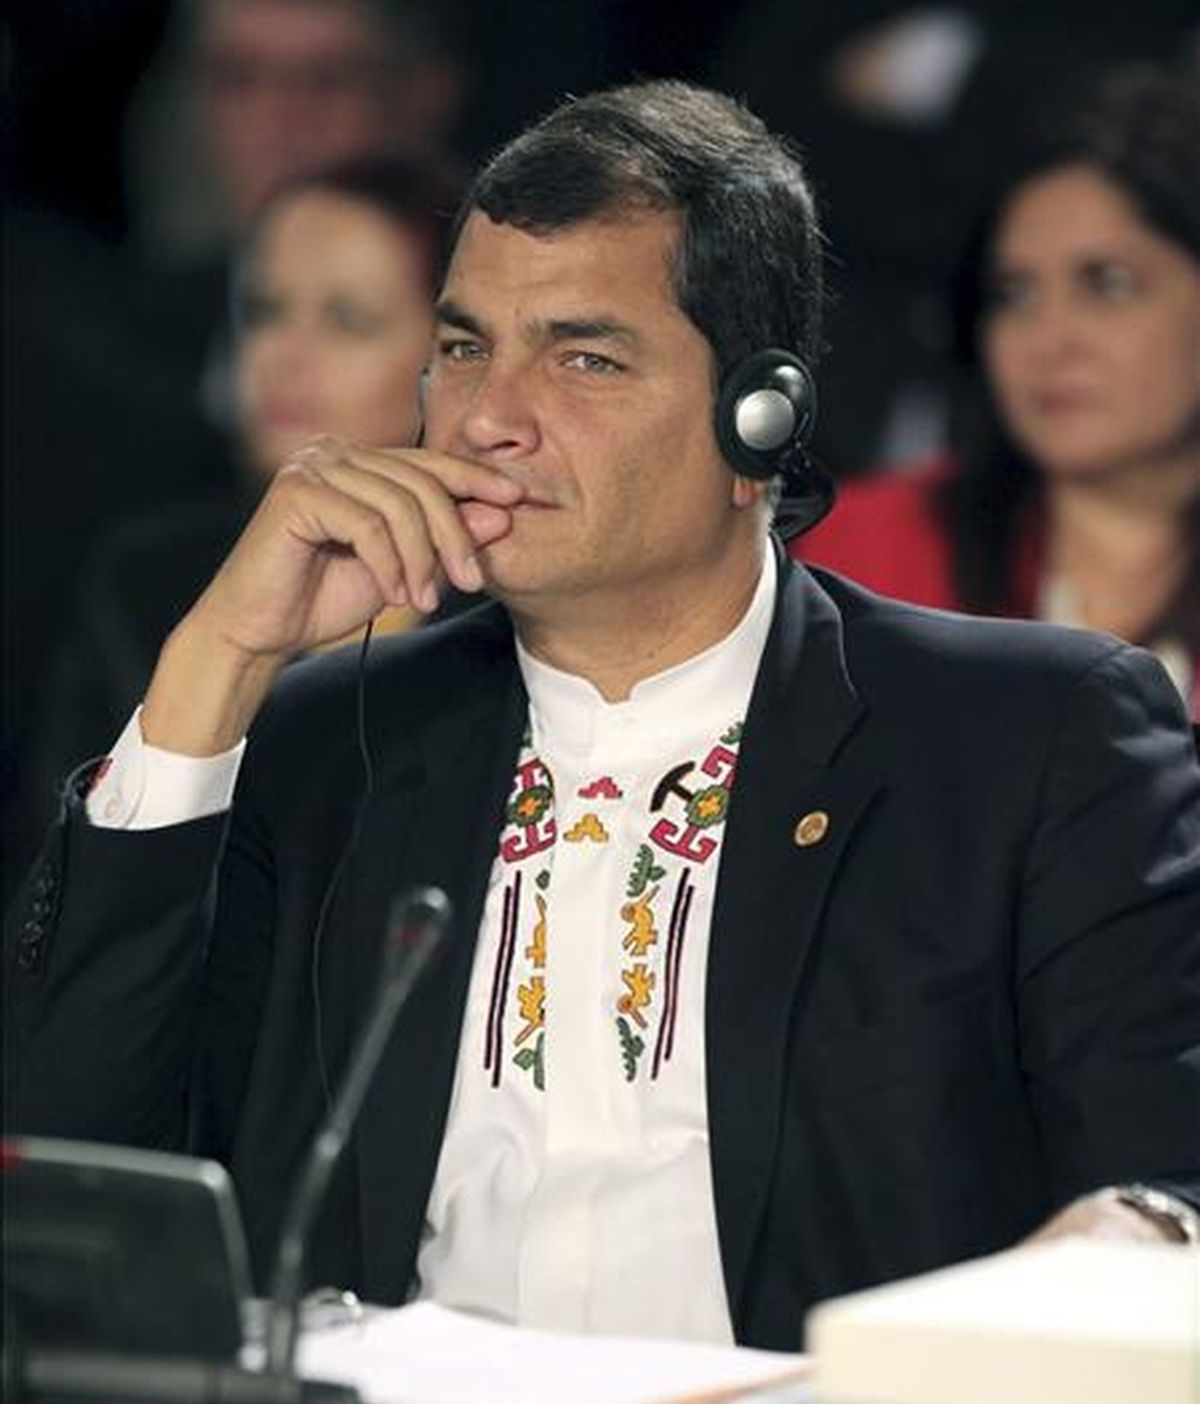 El presidente de Ecuador Rafael Correa asiste a la sesión especial en homenaje al ex presidente de Argentina, Néstor Kirchner, recientemente fallecido, durante la segunda sesión de la XX Cumbre Iberoamericana, en el hotel Provincial de la ciudad de Mar del Plata, Argentina EFE